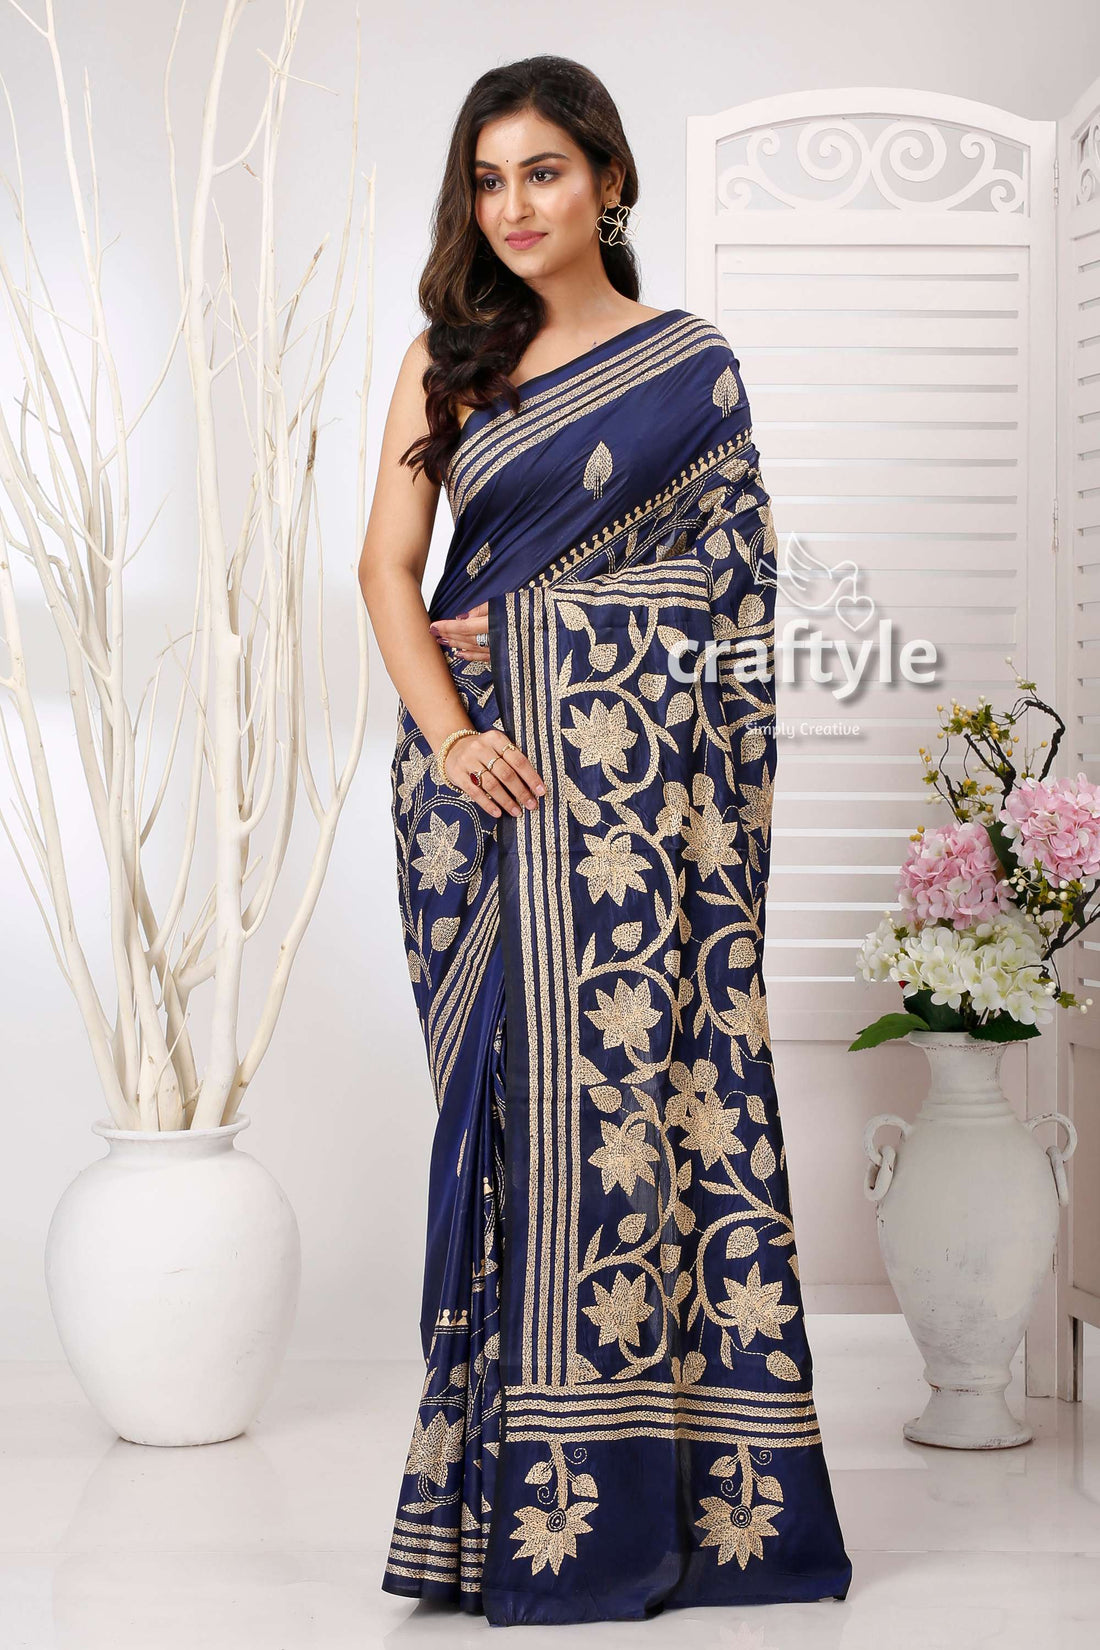 Gulf Blue Beige Thread Work Floral Handmade Silk Kantha Saree - Craftyle